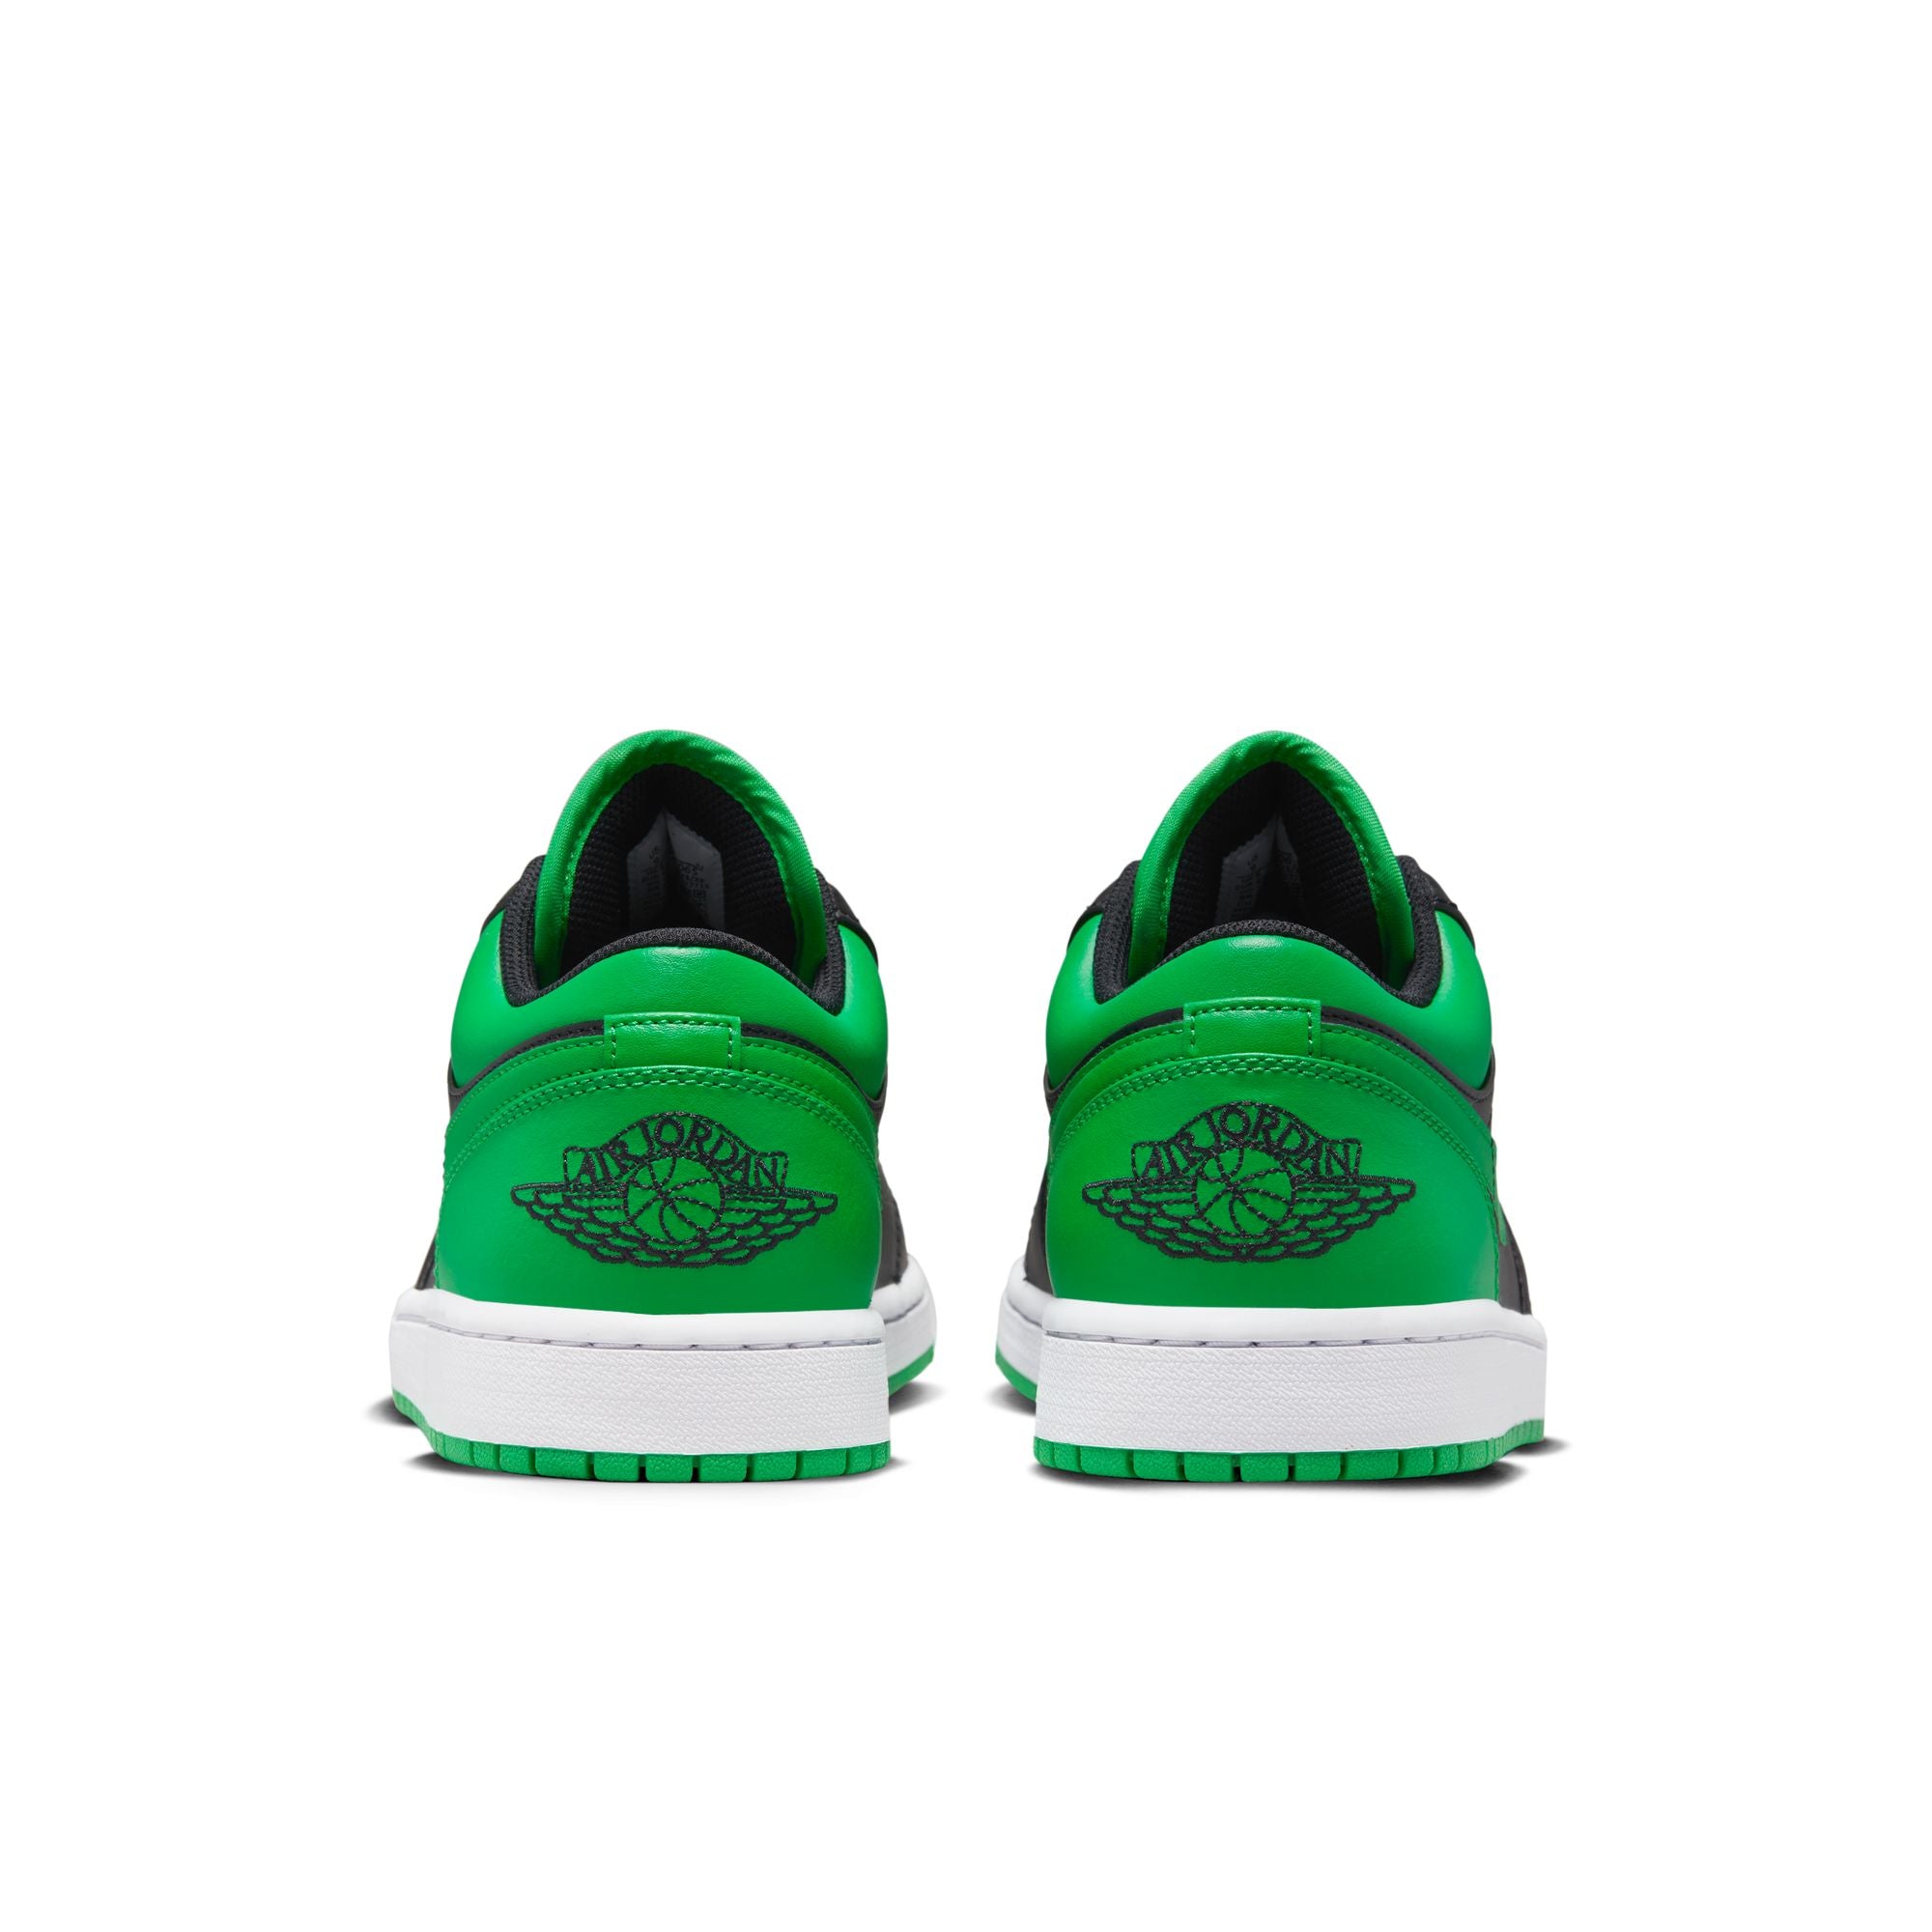 Nike Air Jordan 1 Low Green Toe: PH price, release